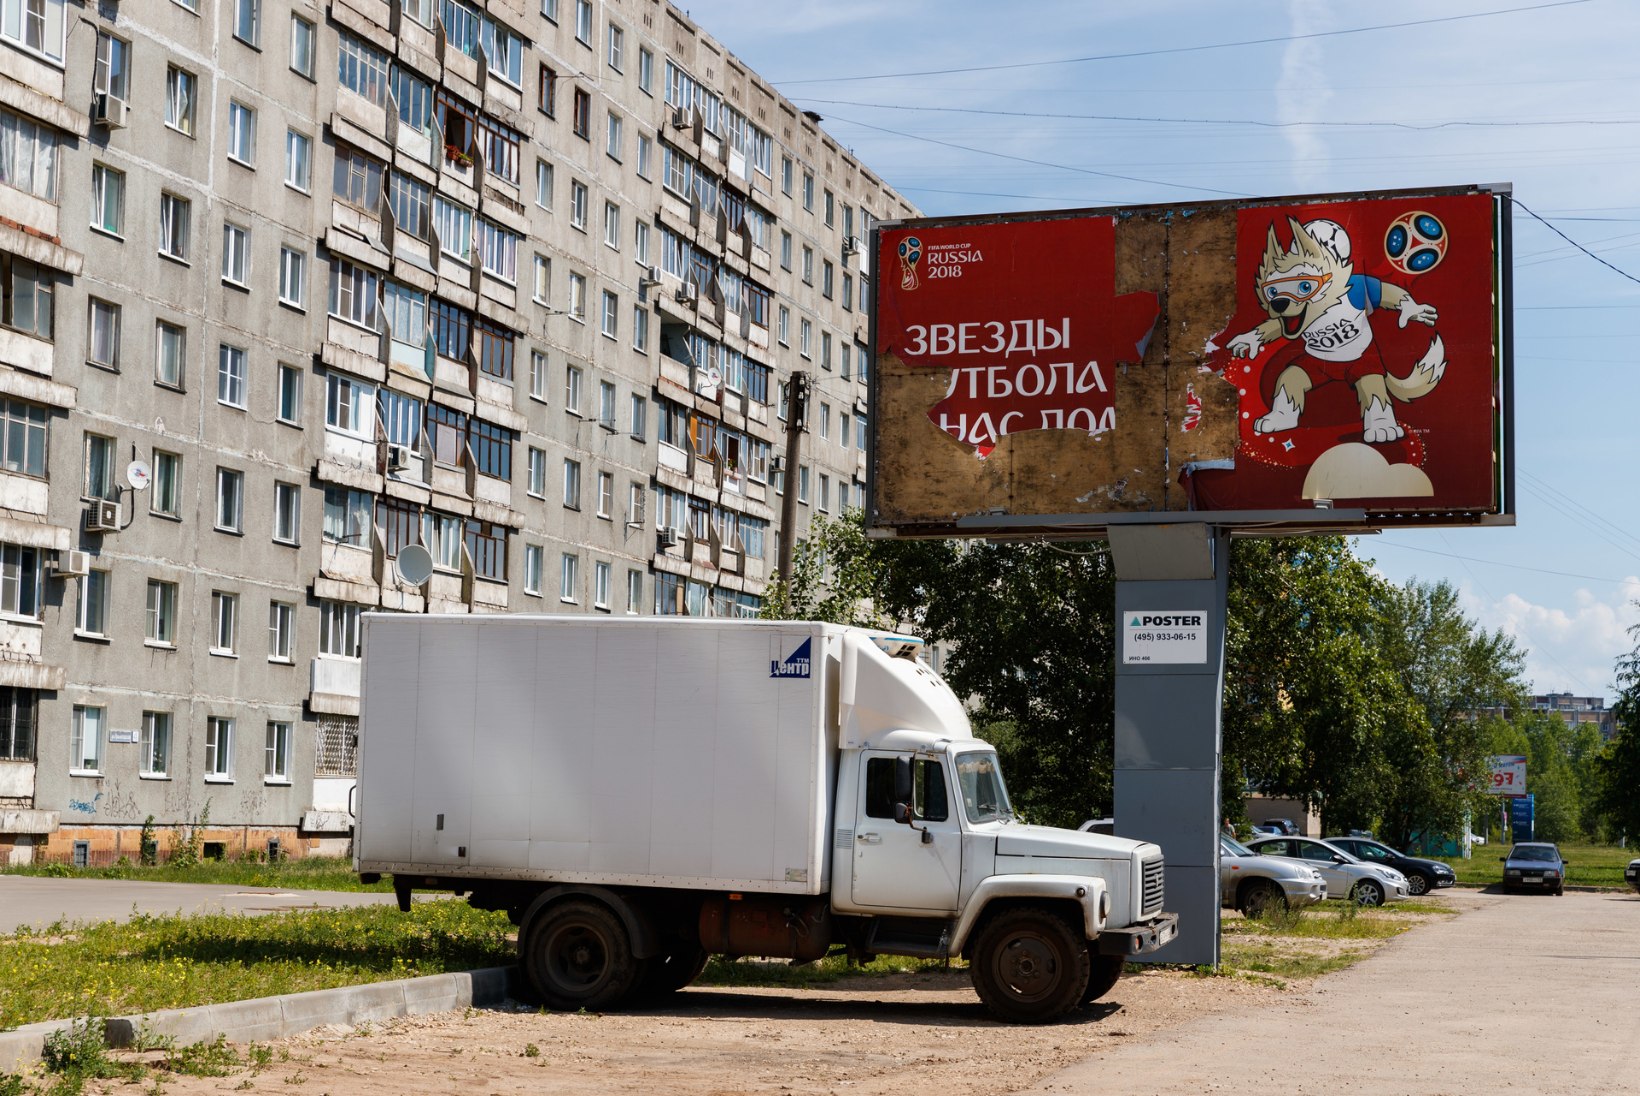 ÕL MOSKVAS | FOTOD | Tätoveeritud lihamägi, Lenin ja päris Venemaa ehk MM läbi kaamerasilma